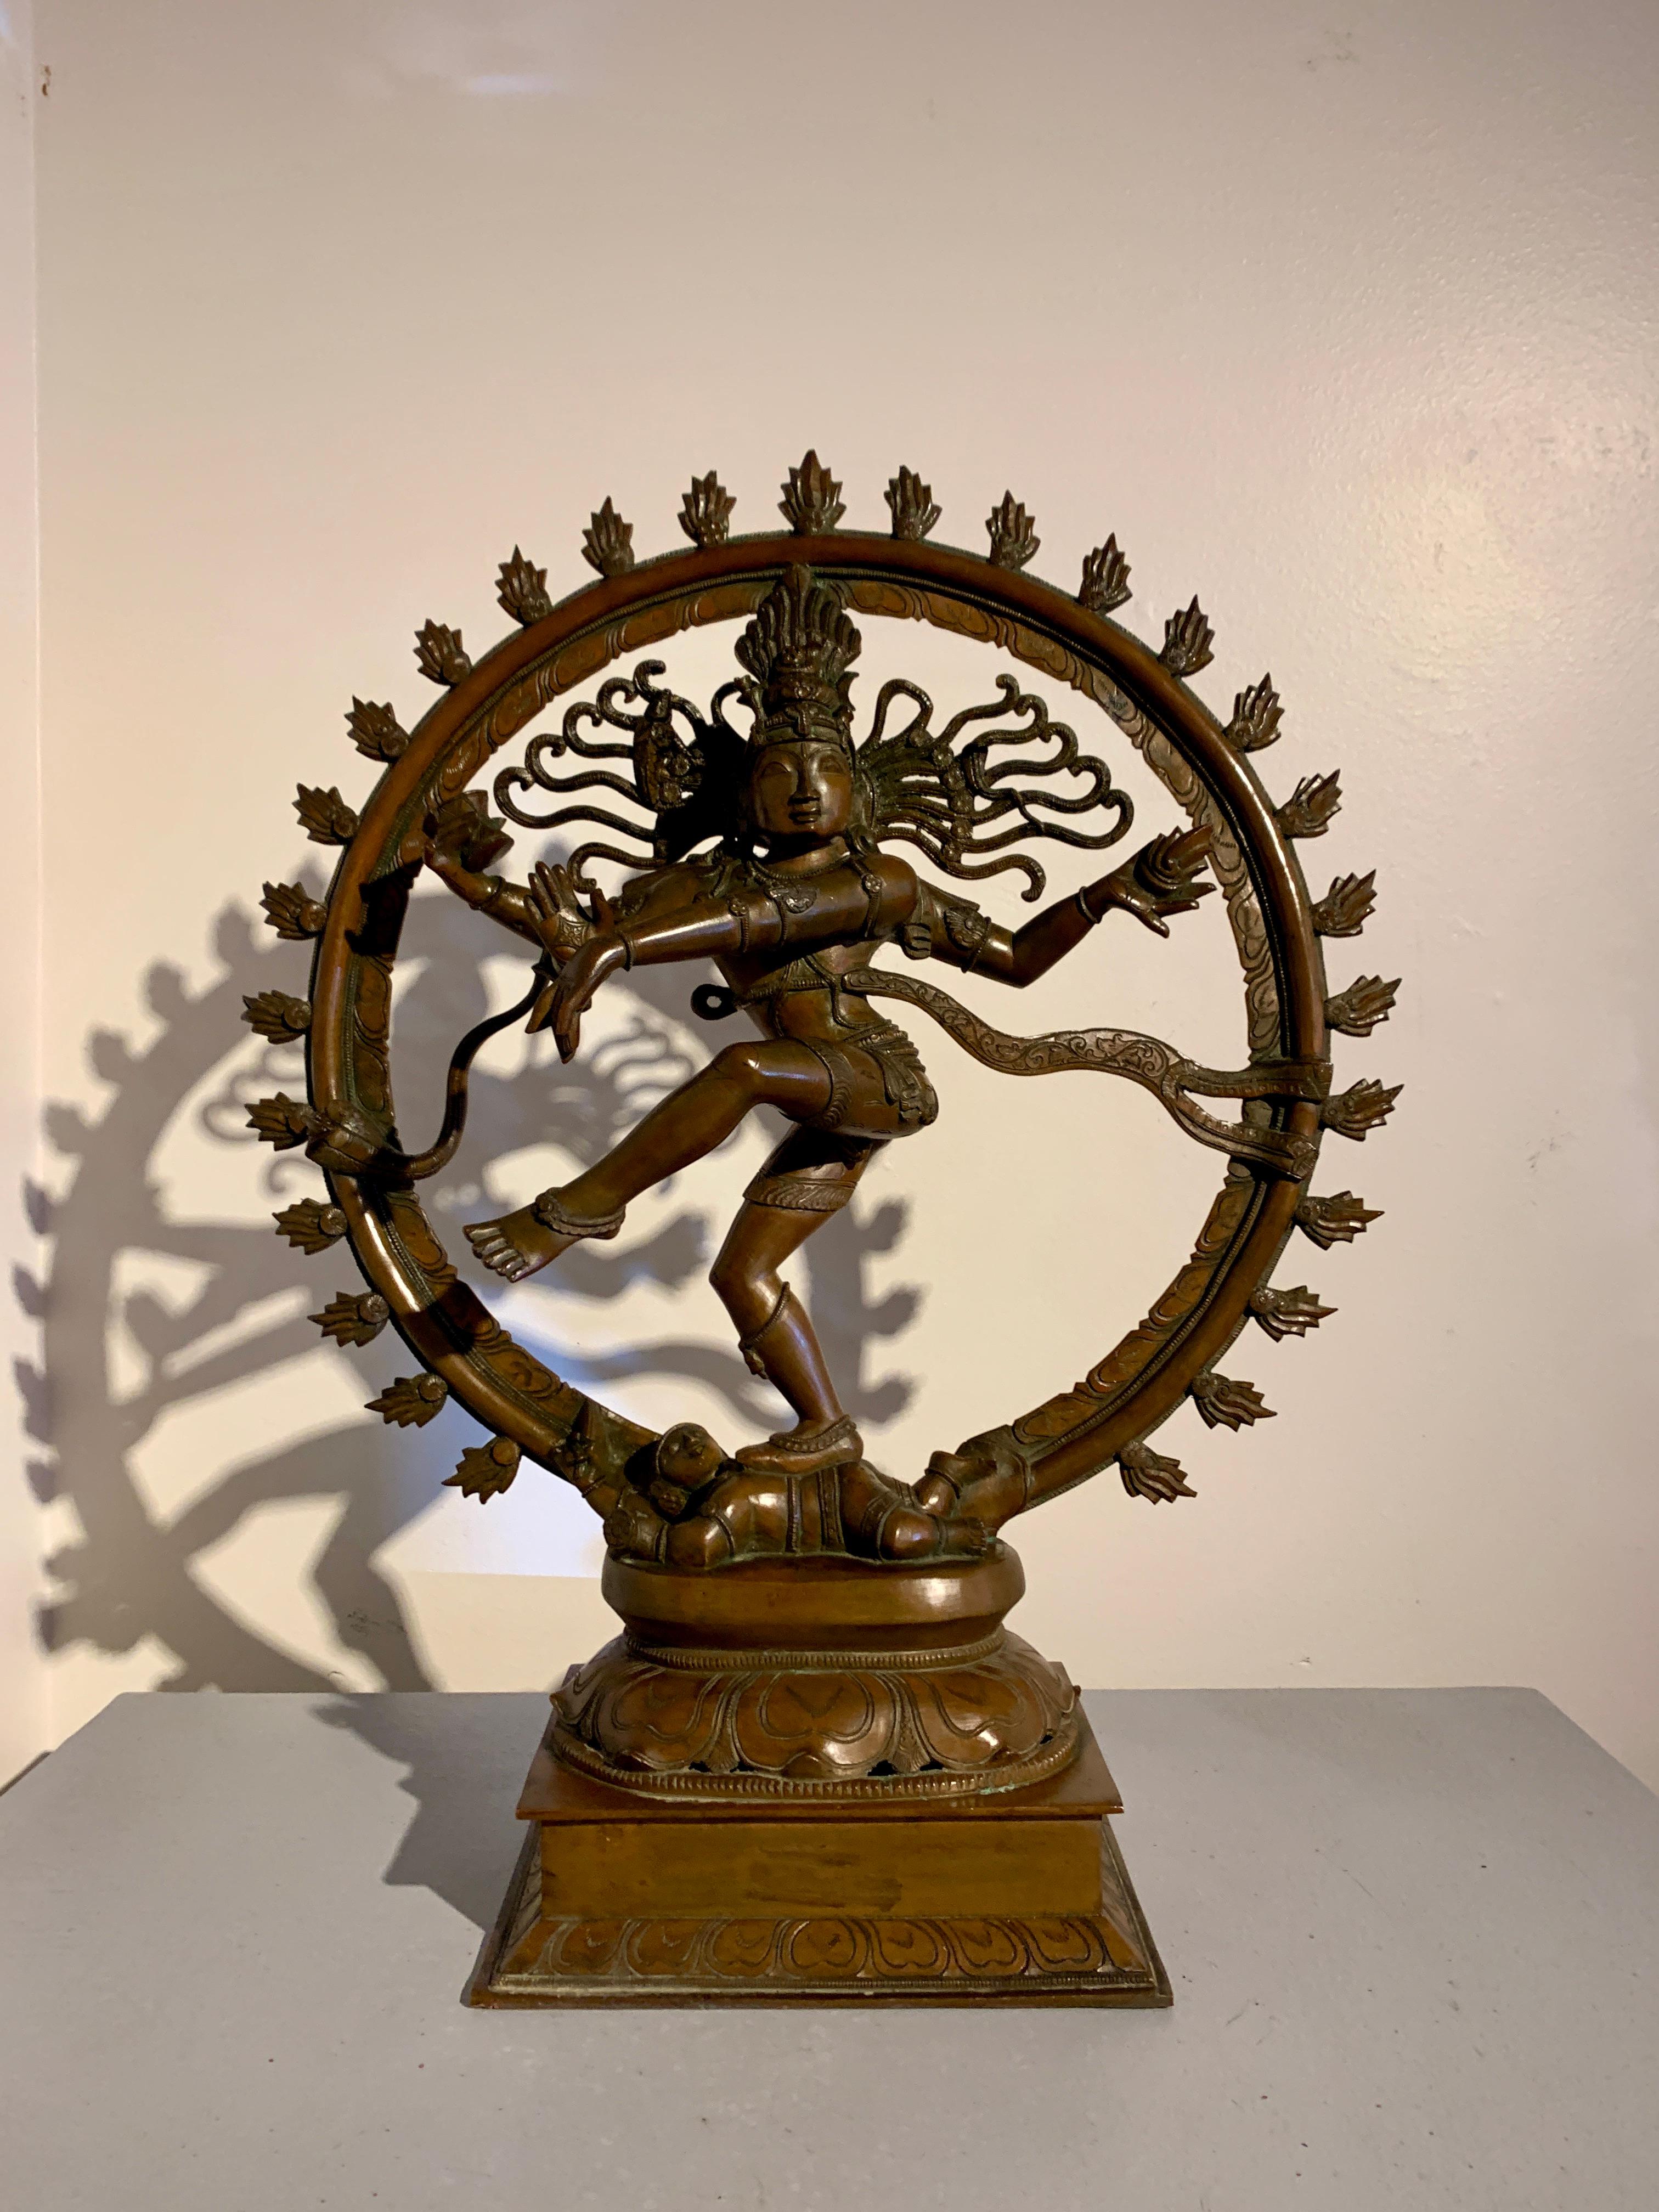 Lourde figure en bronze du sud de l'Inde représentant Shiva Nataraja, ou Shiva en tant que Seigneur de la Danse, dans le style Chola, fin du 19ème ou début du 20ème siècle, Inde. 

Shiva est représenté ici sous la forme de Nataraja, le seigneur de